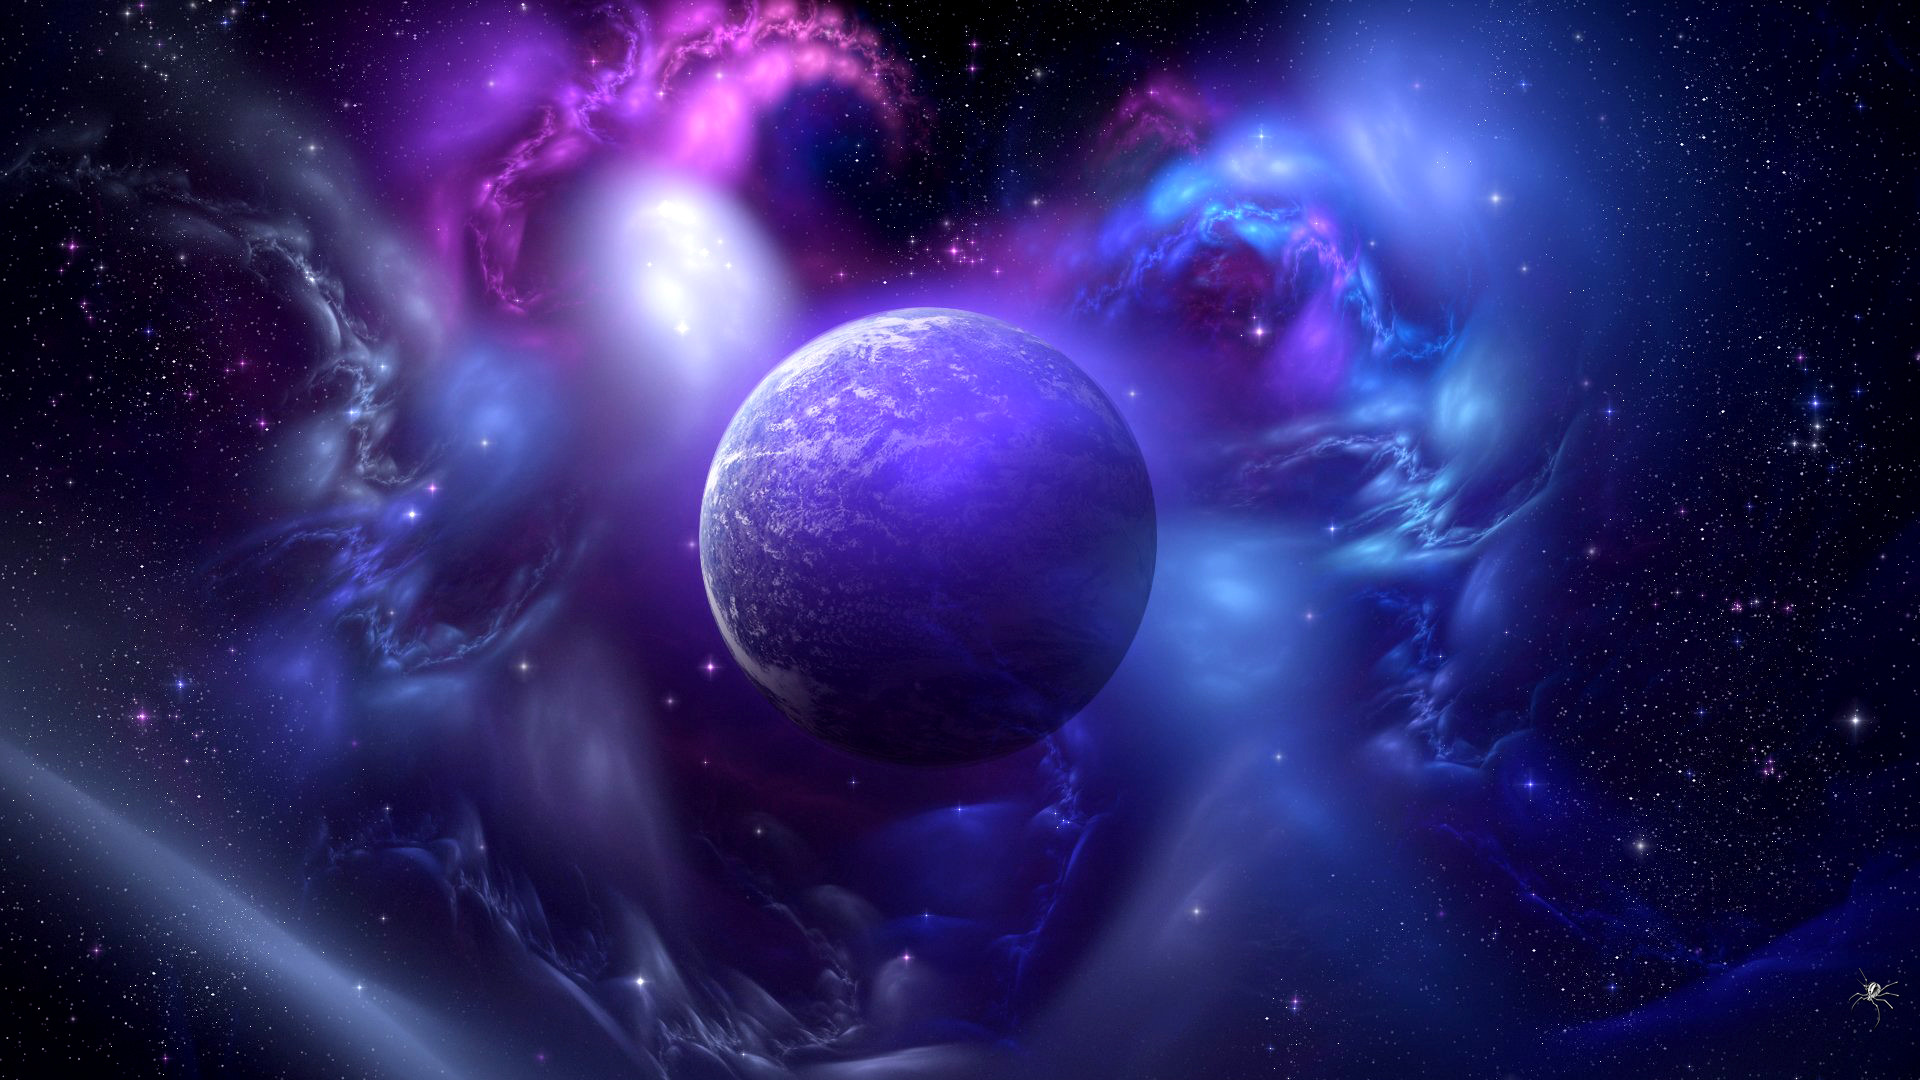 Purple cosmic dust in space